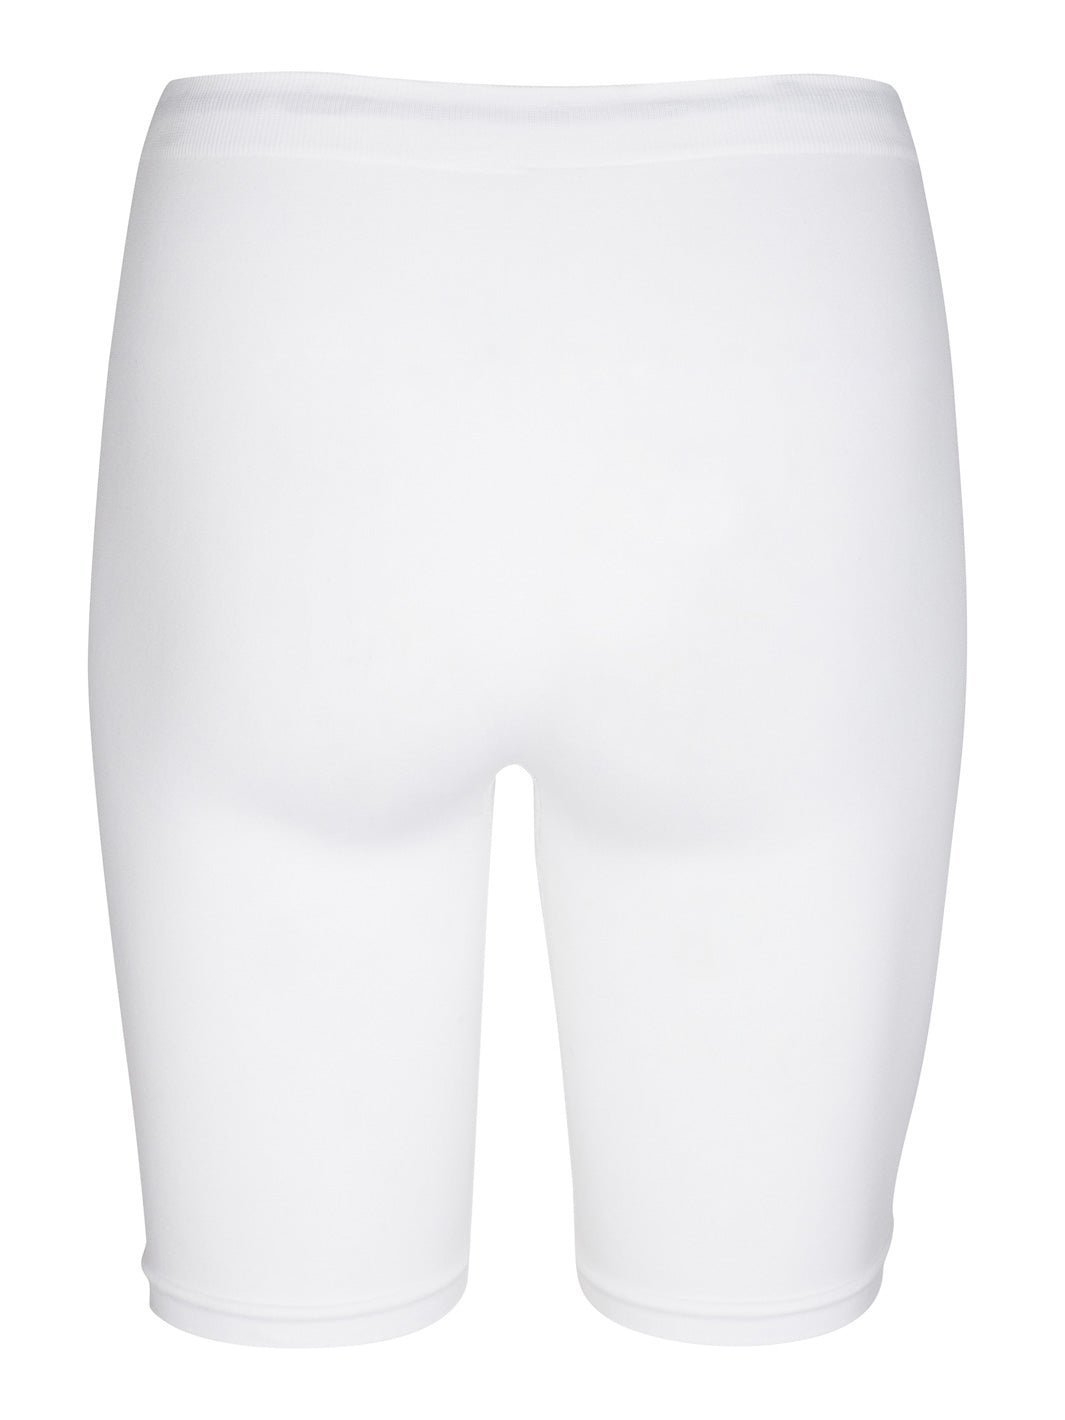 Liberté Ninna shorts white - Online - Mode